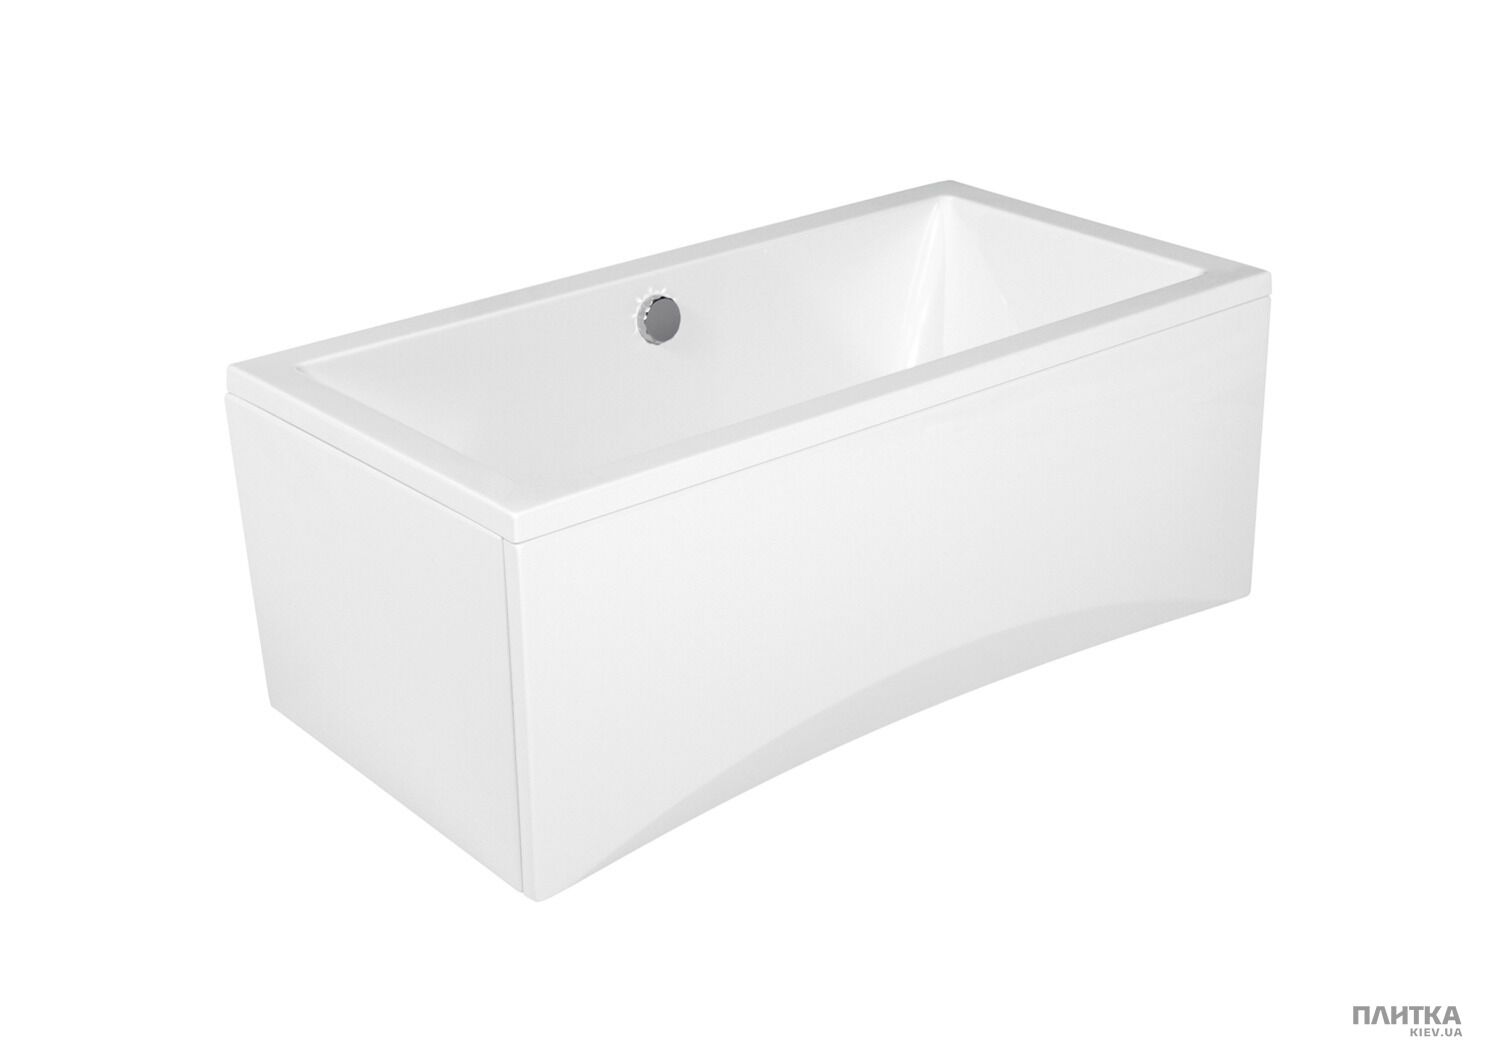 Акриловая ванна Cersanit Intro 150x75 см белый